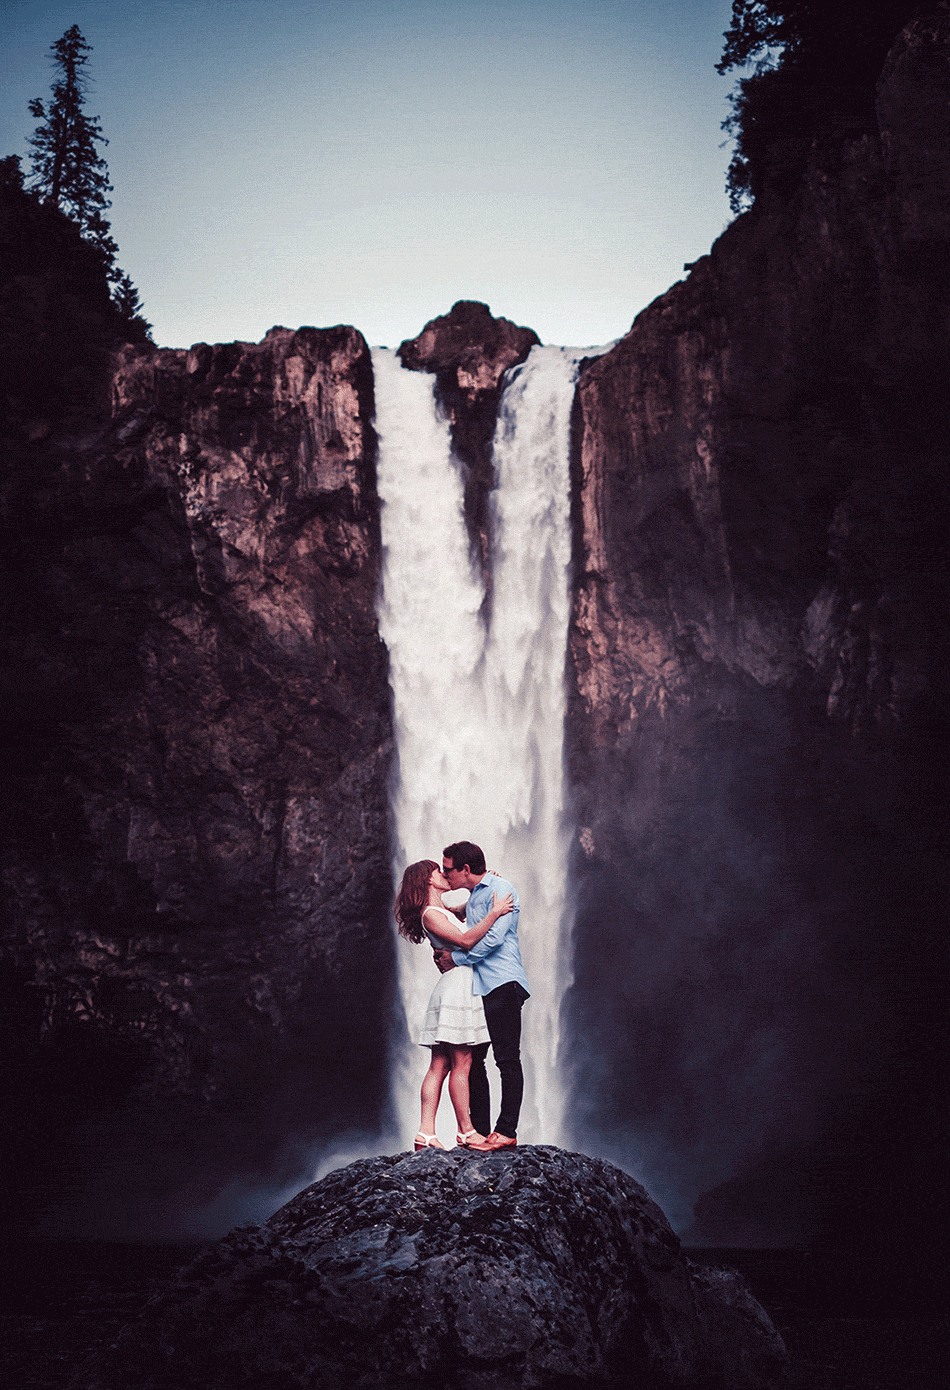 Анимация Влюбленные обнявшись стоят на фоне водопада, гифка Влюбленные обнявшись стоят на фоне водопада